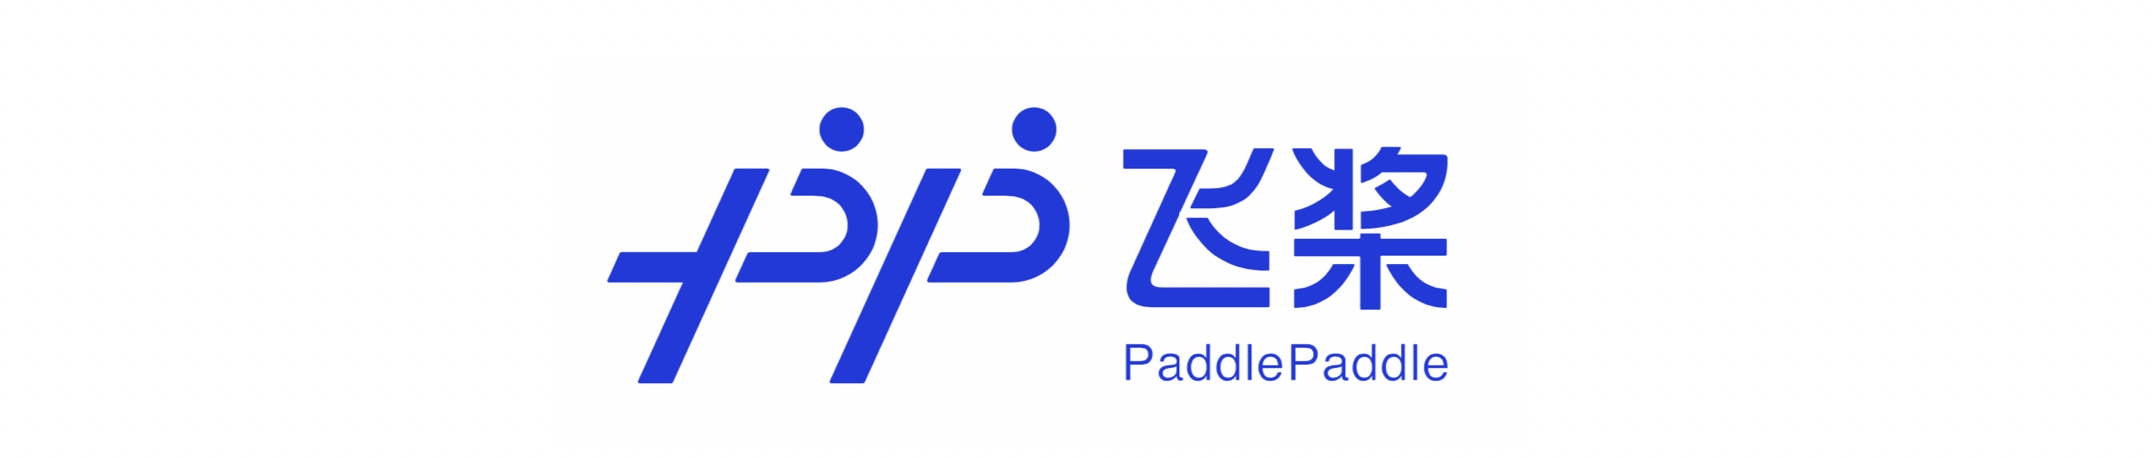 PaddlePaddle Logotipo